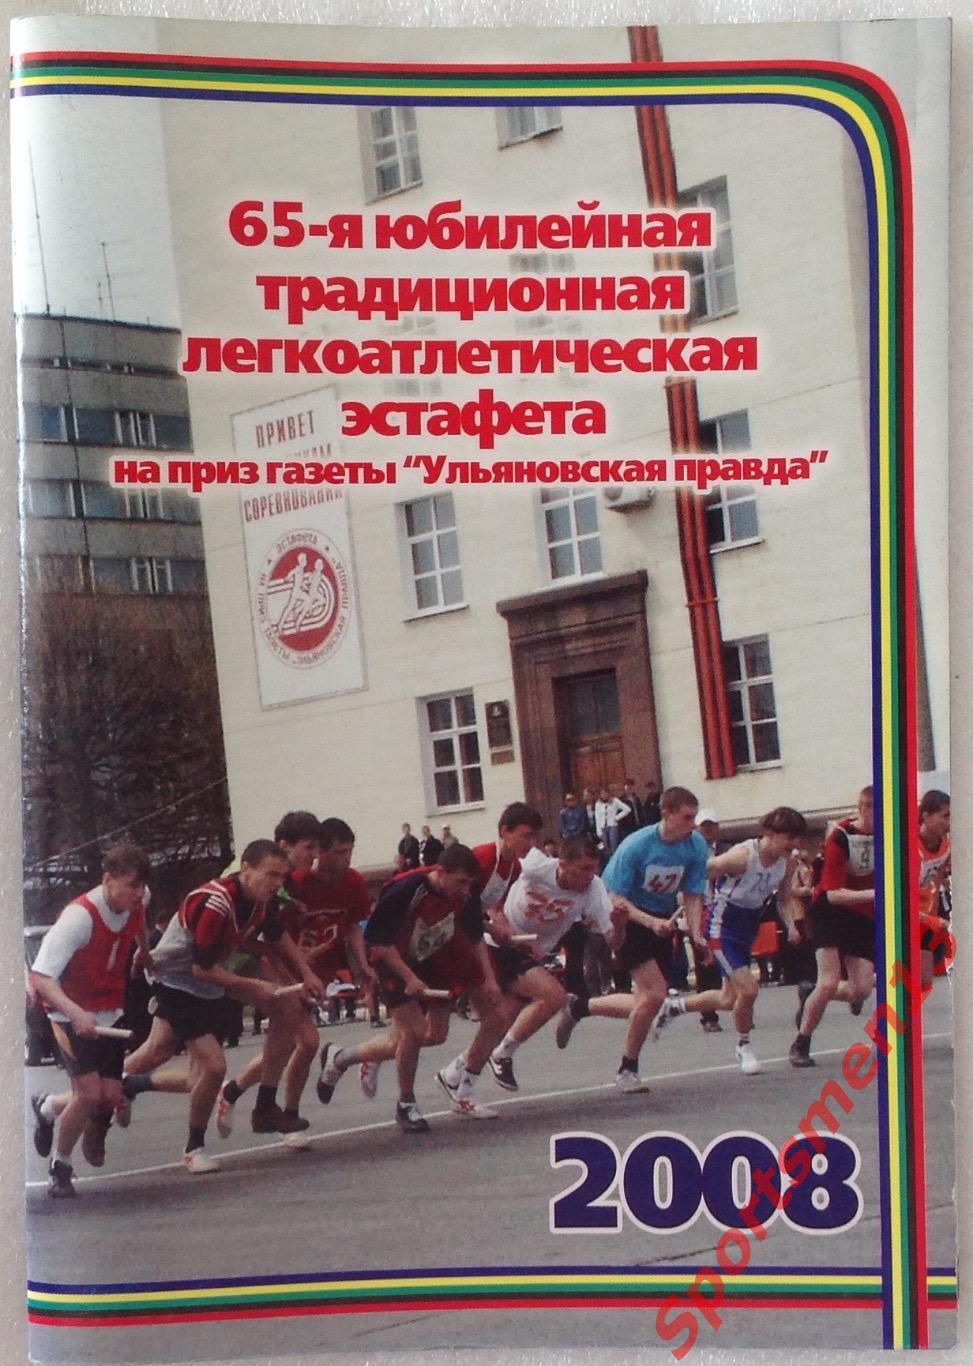 65 Легкоатлетическая эстафета, 2008. Ульяновск